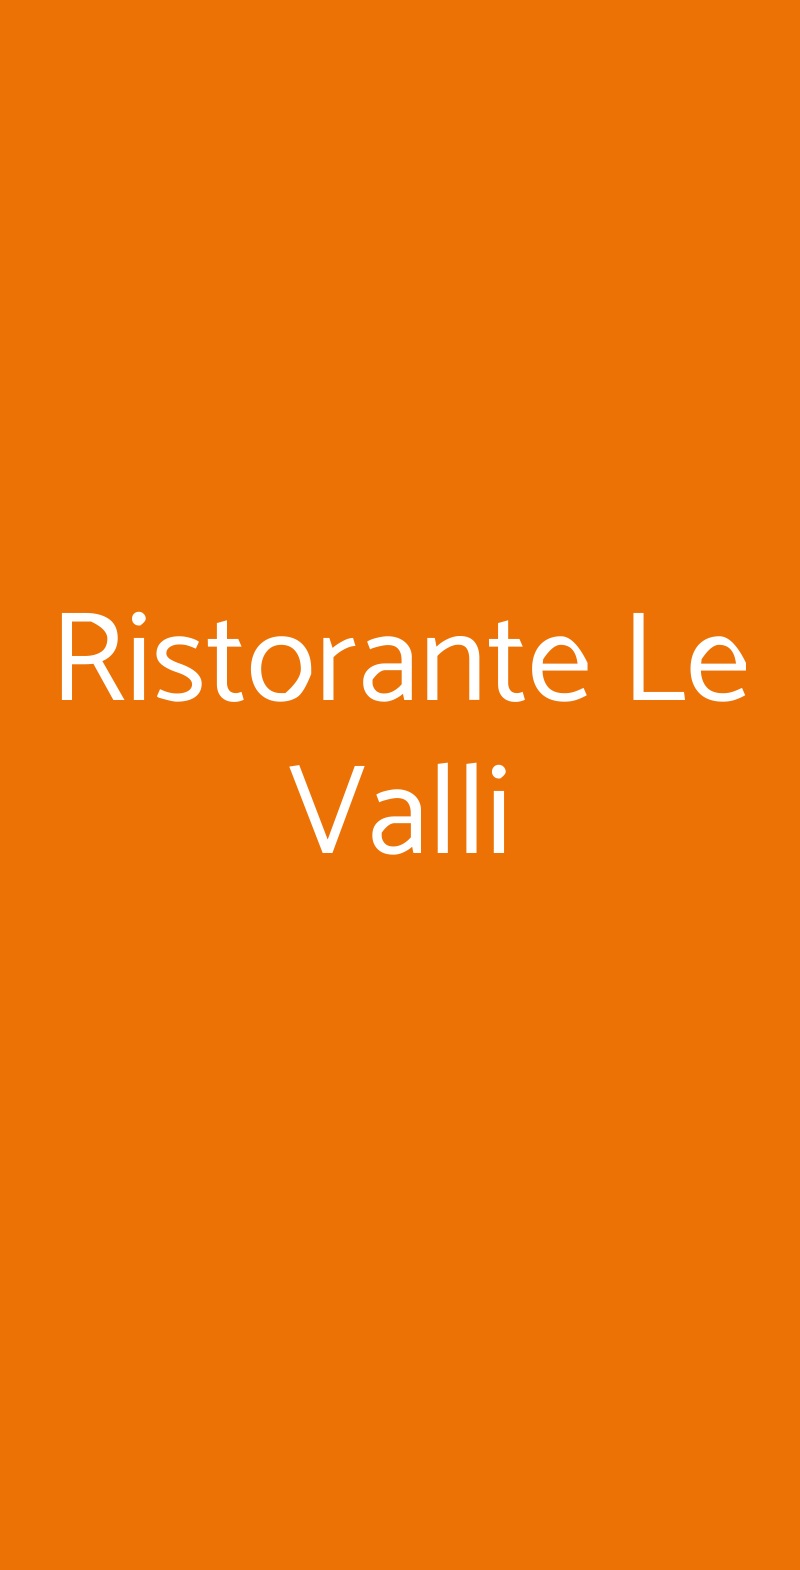 Ristorante Le Valli Roma menù 1 pagina